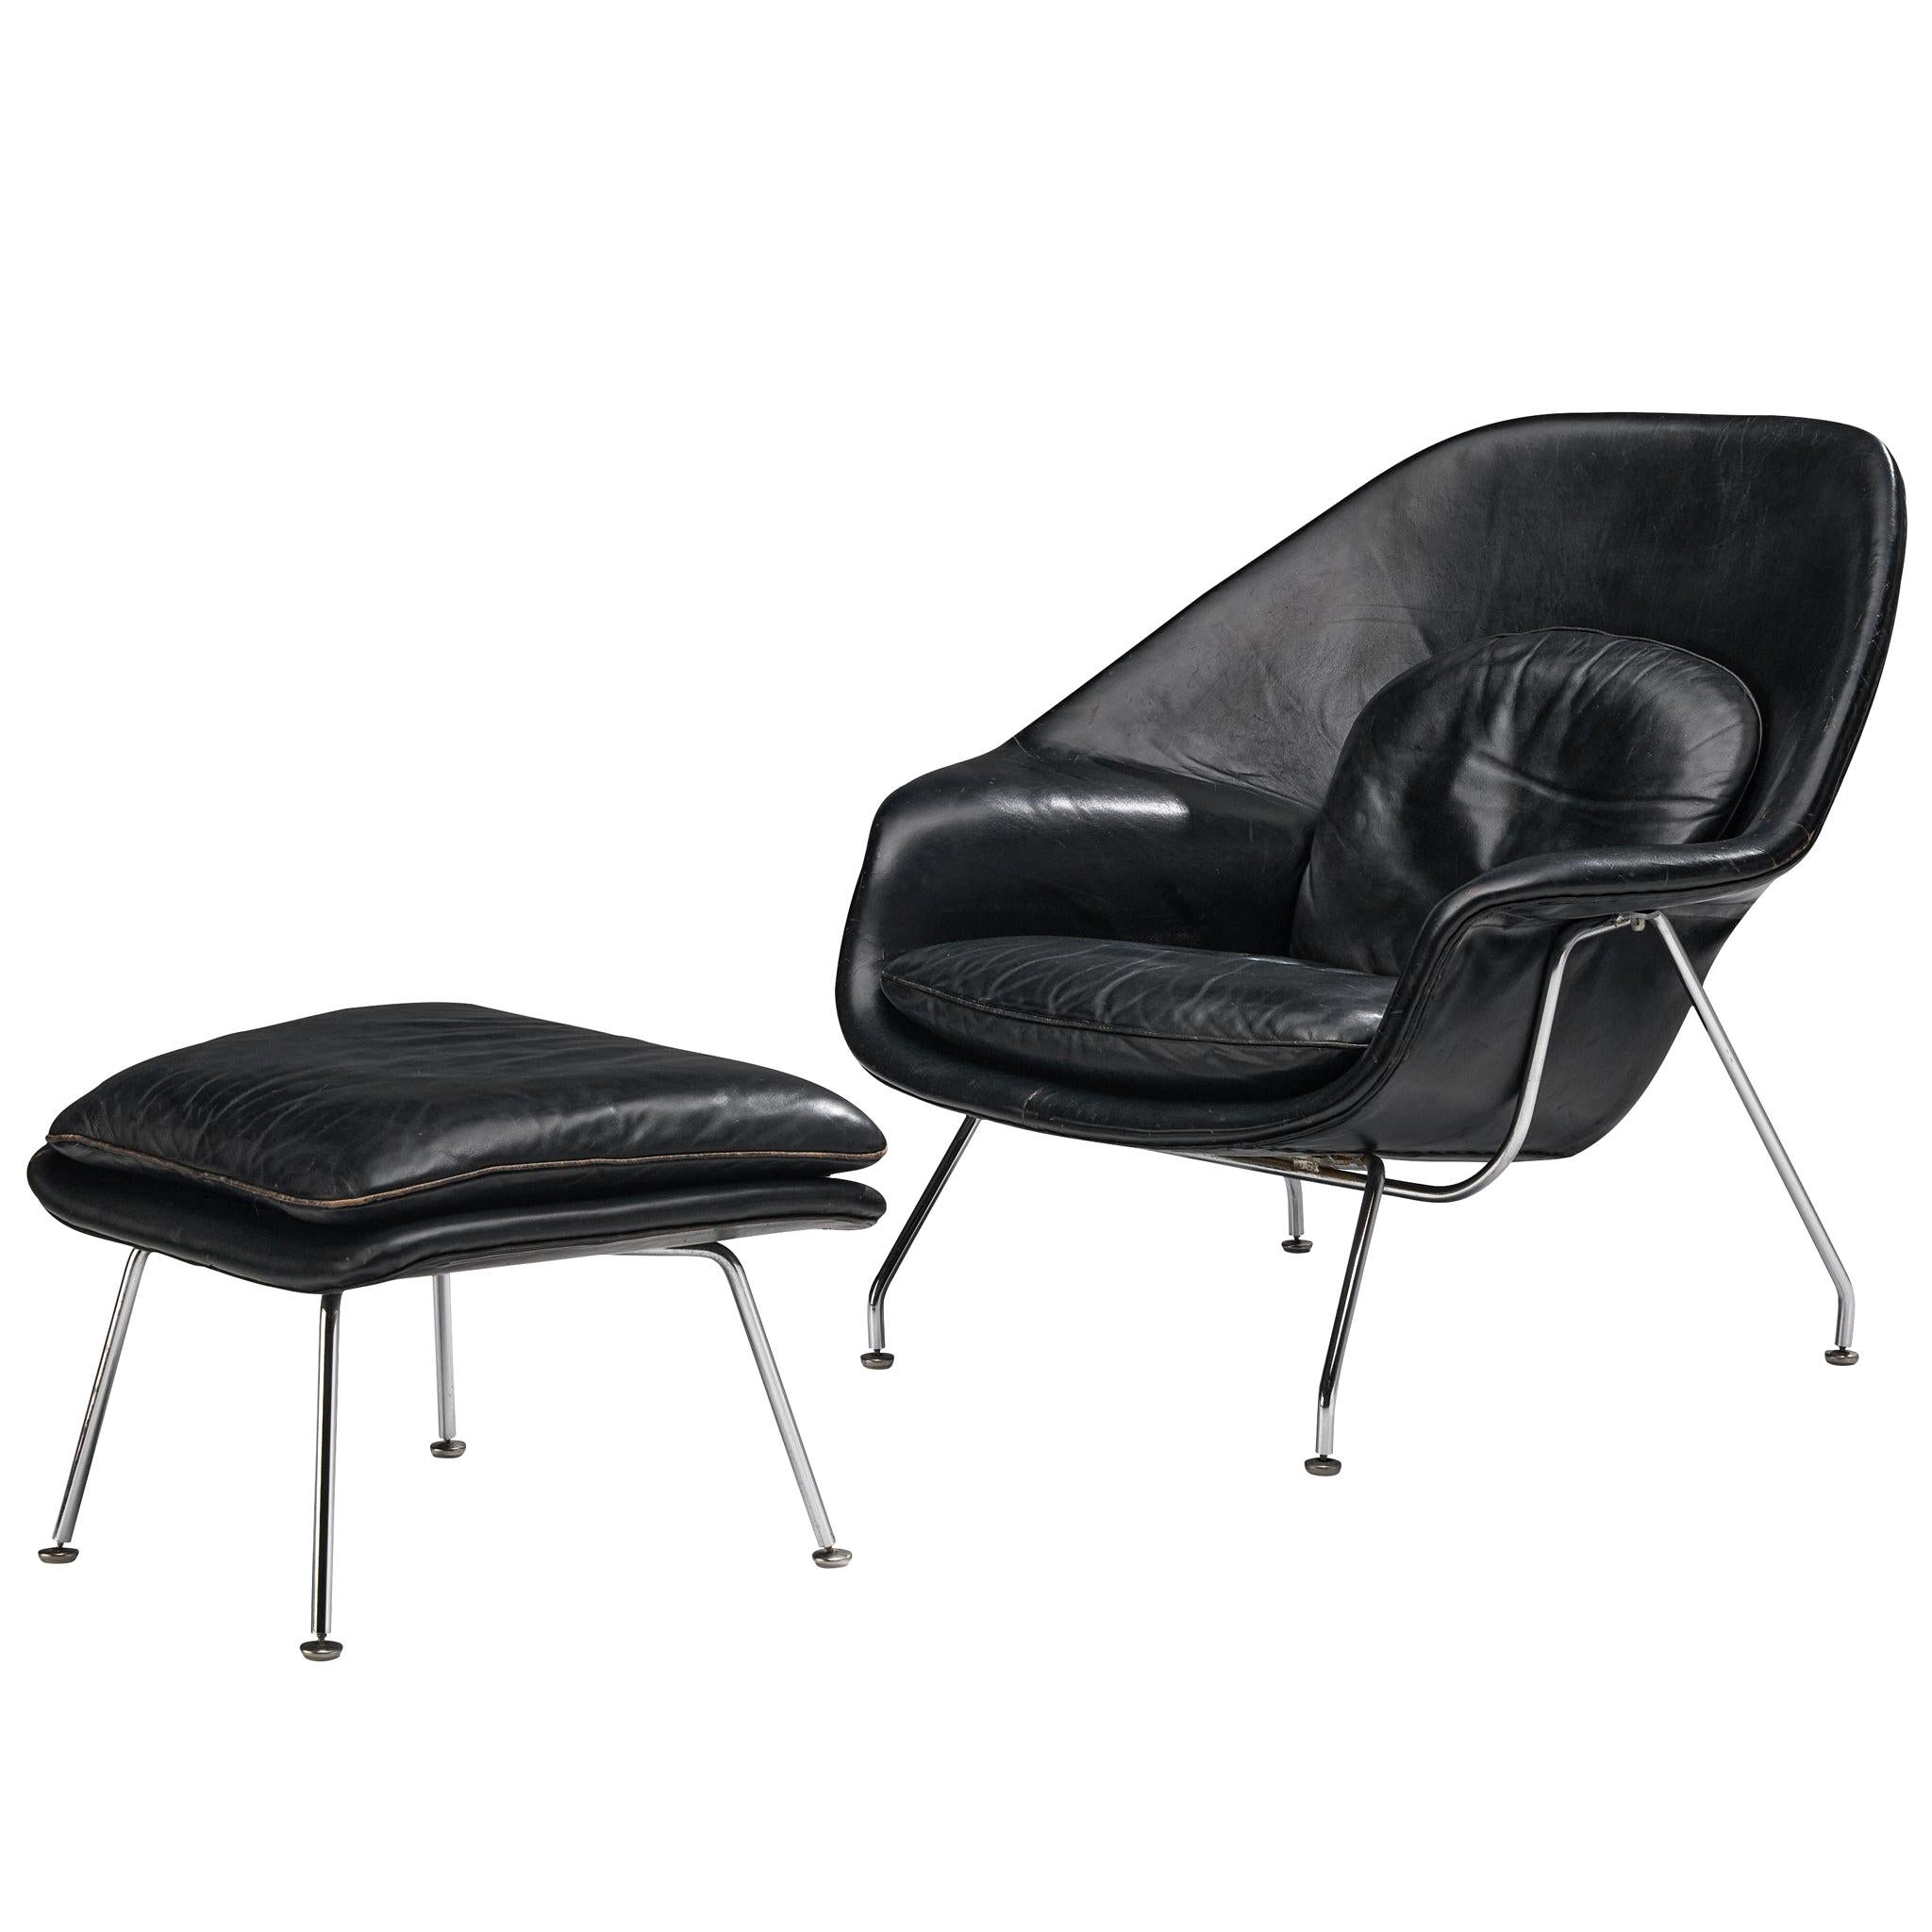 Eero Saarinen 'Womb' Chair with Ottoman in Original Leather